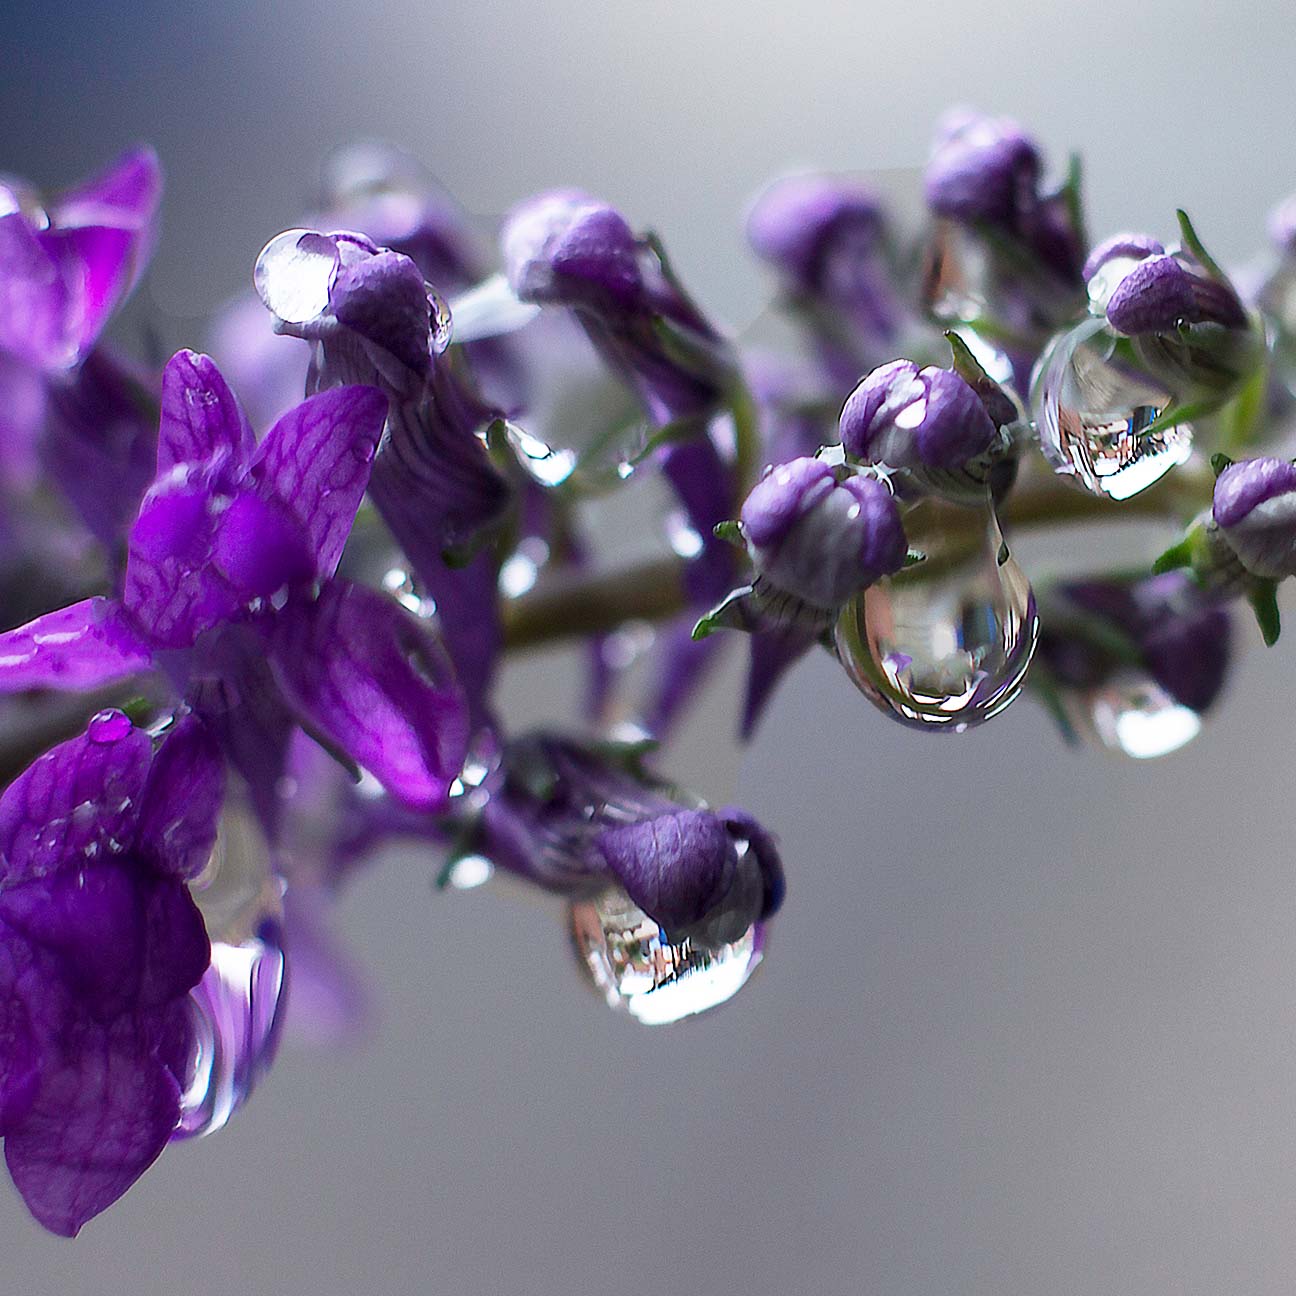 N Lavandula Angustifolia(Lavender) Water image 1